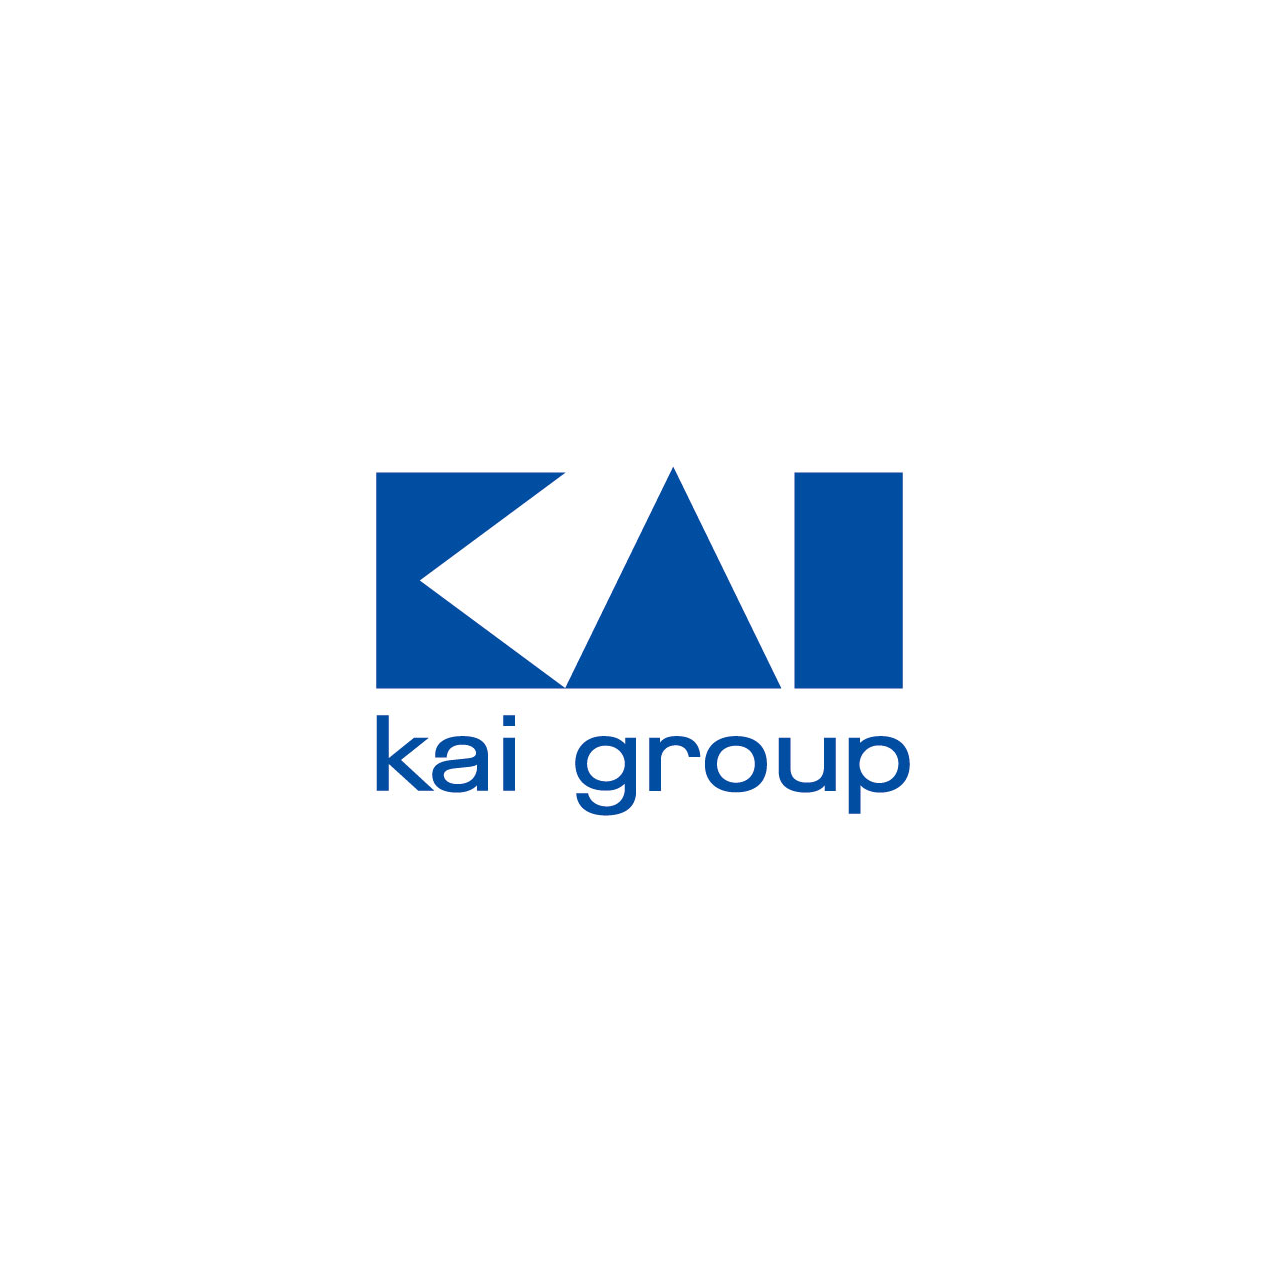 www.kai-group.com